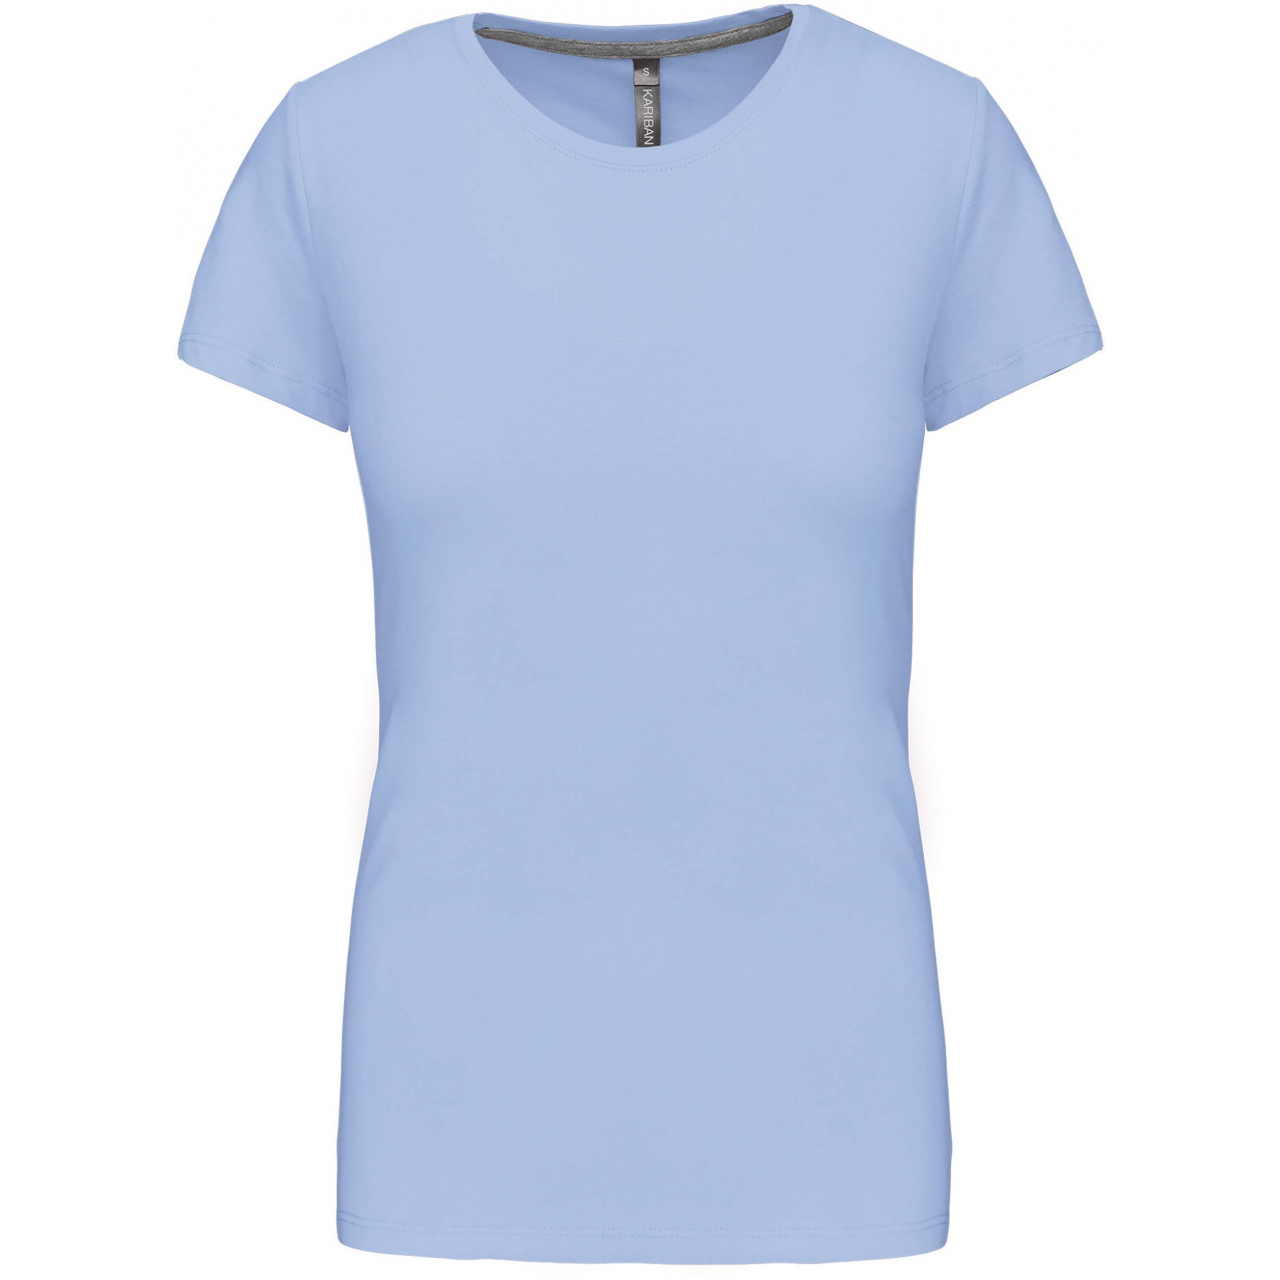 Dámské tričko Kariban s krátkým rukávem - světle modré, XXL